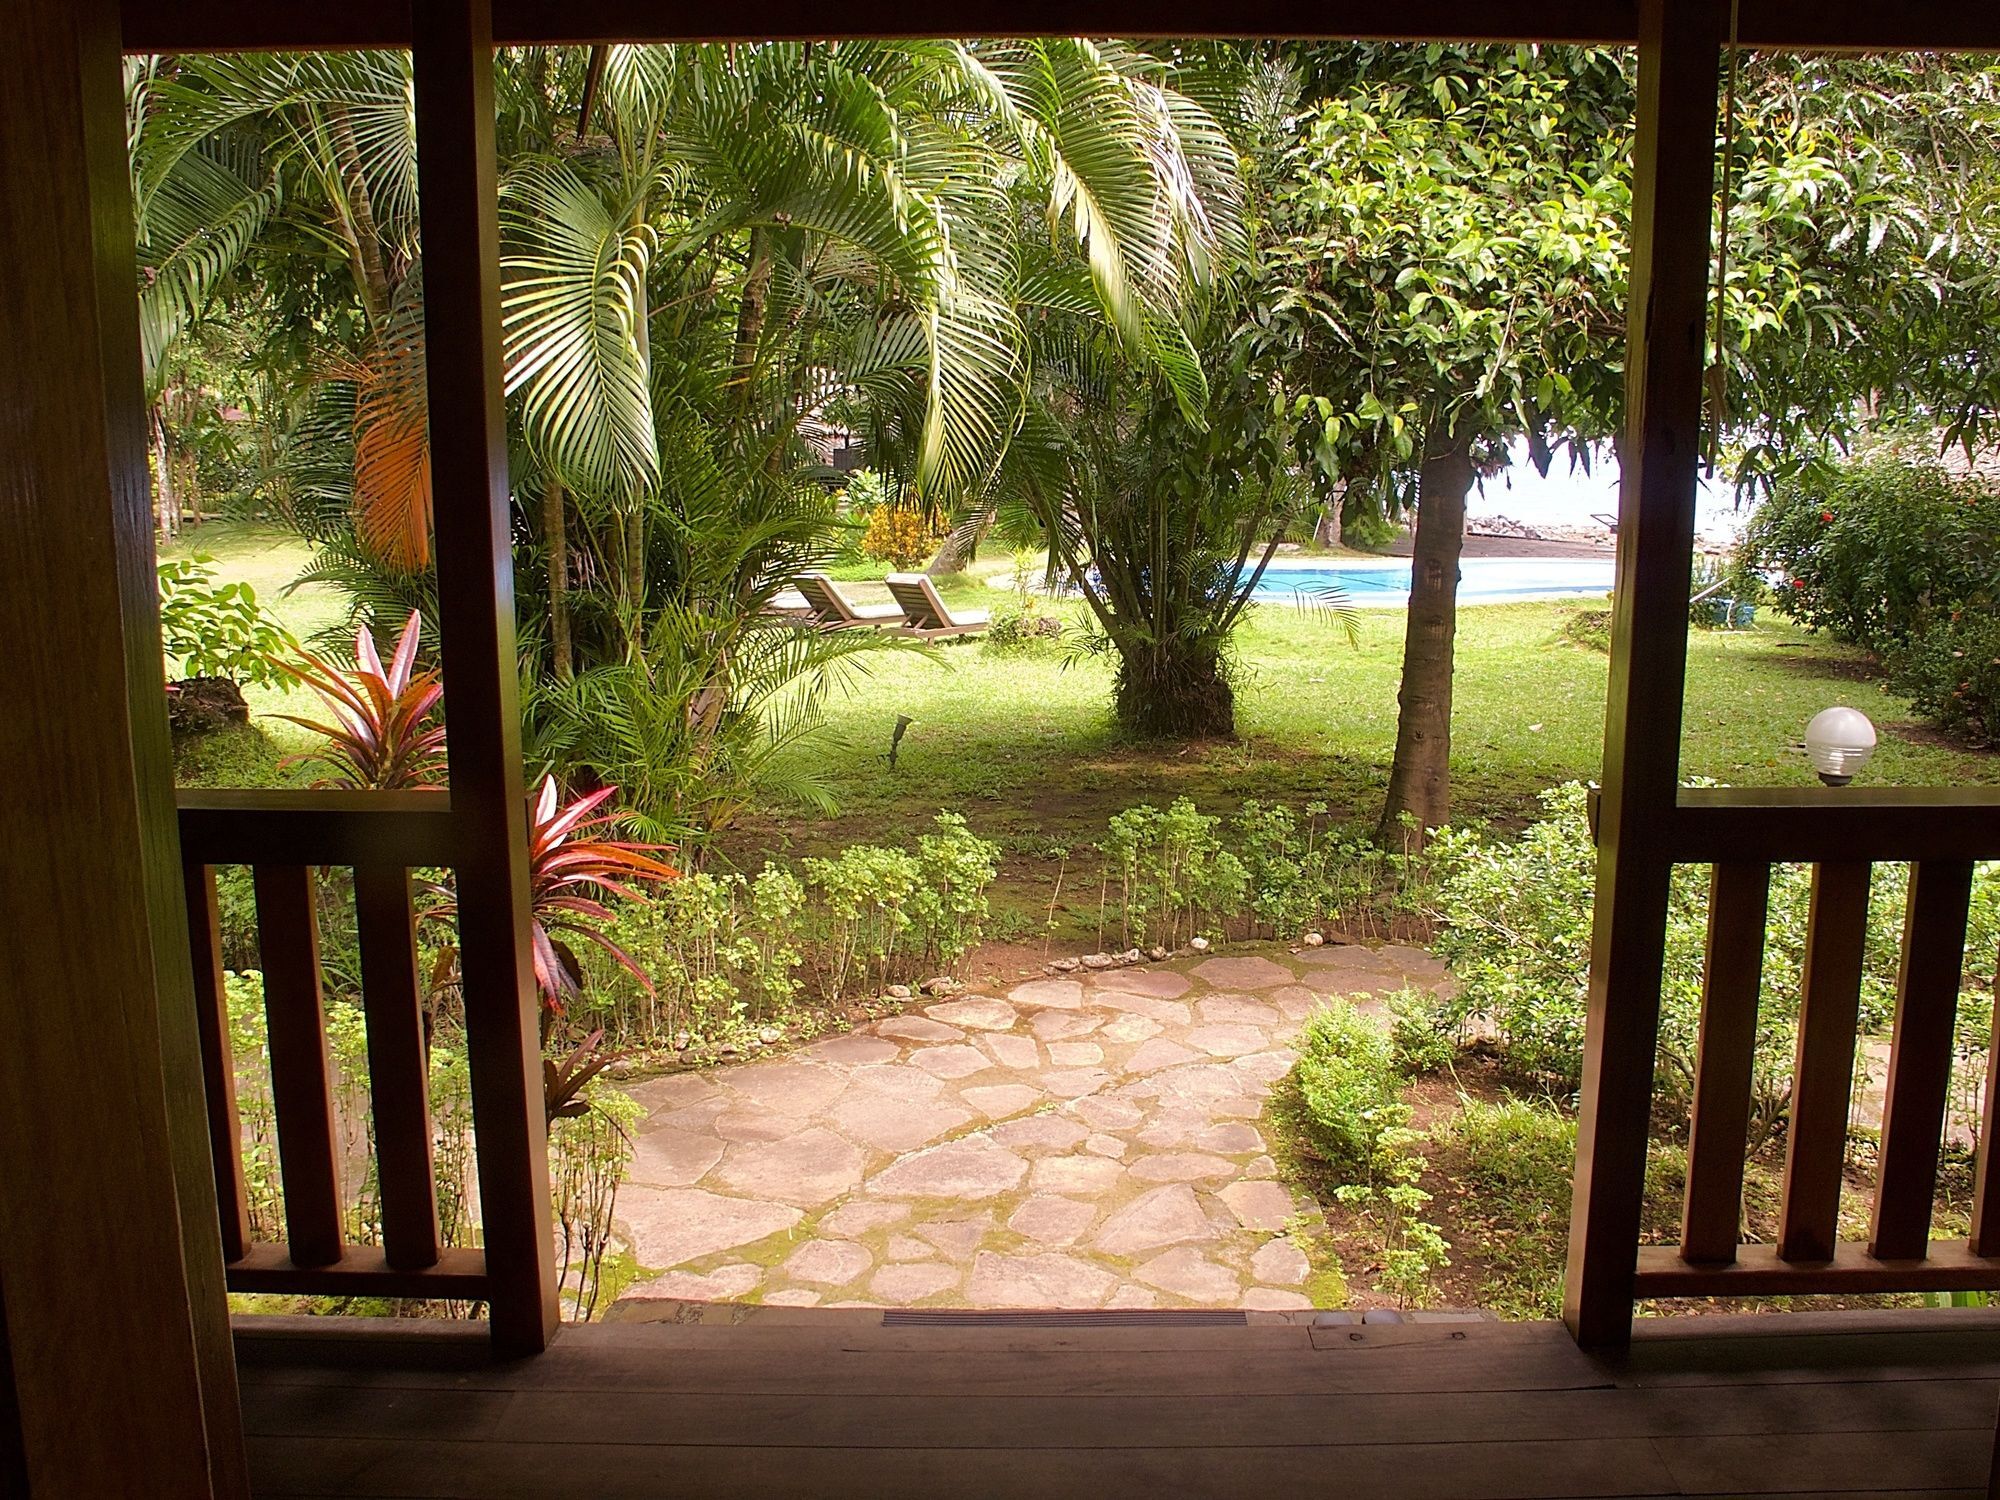 مانادو Mapia Resort المظهر الخارجي الصورة